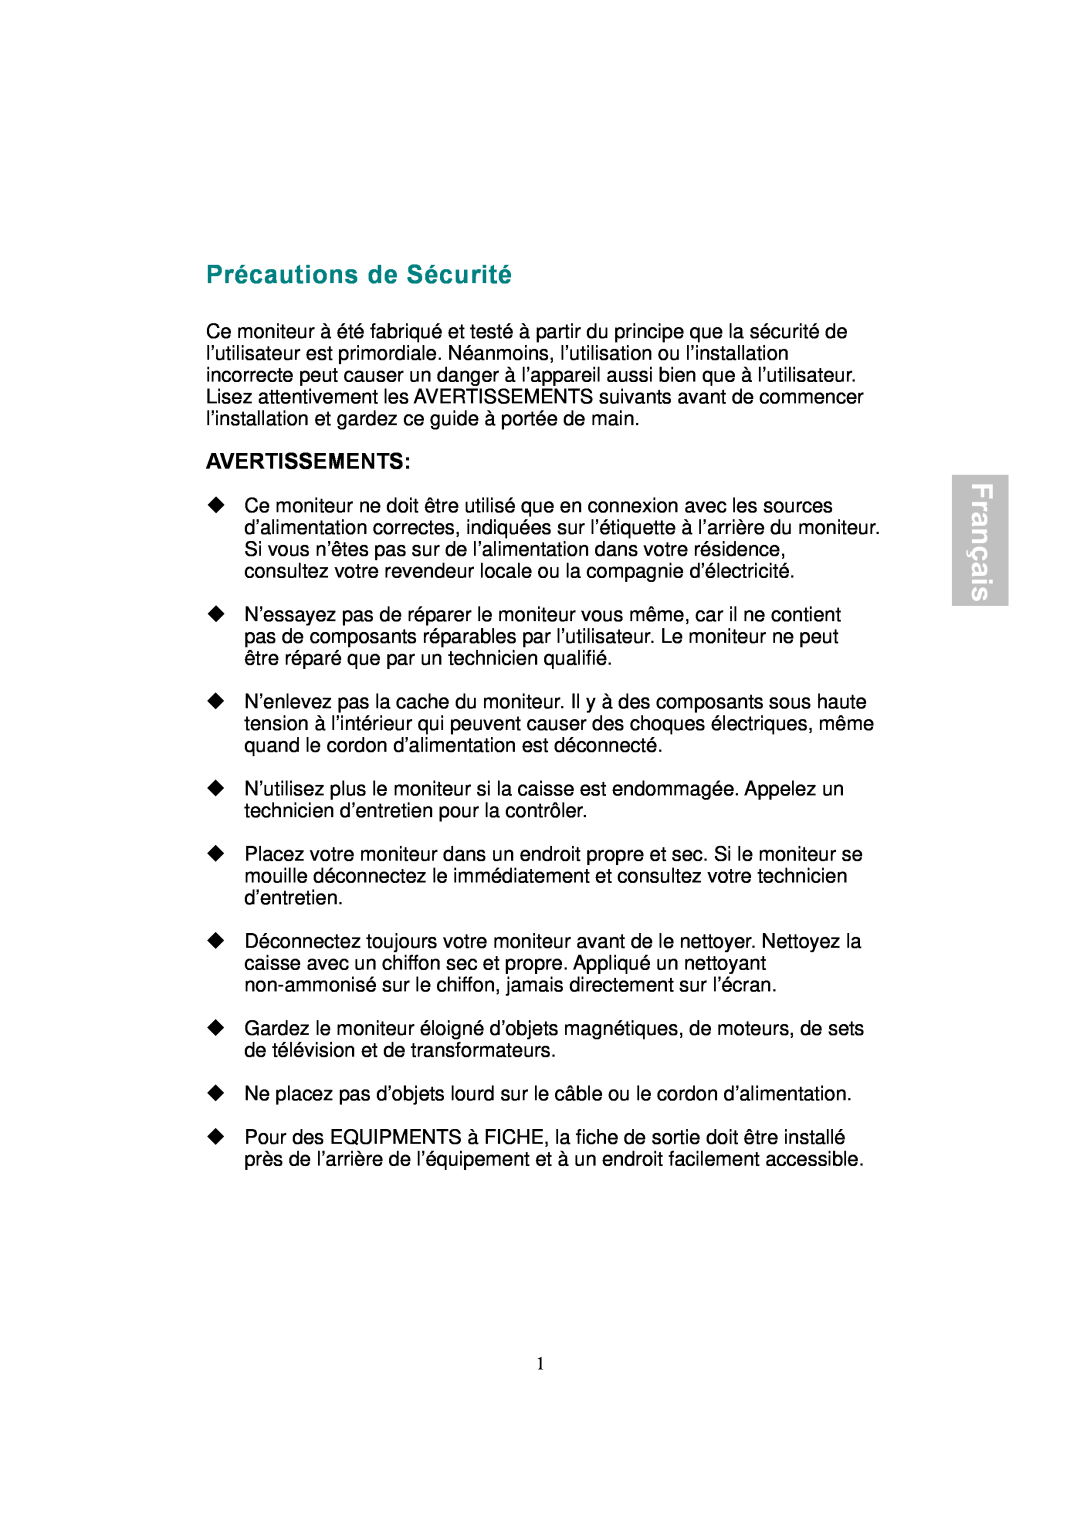 AOC 177Sa-1 manual Précautions de Sécurité, Avertissements, Français 